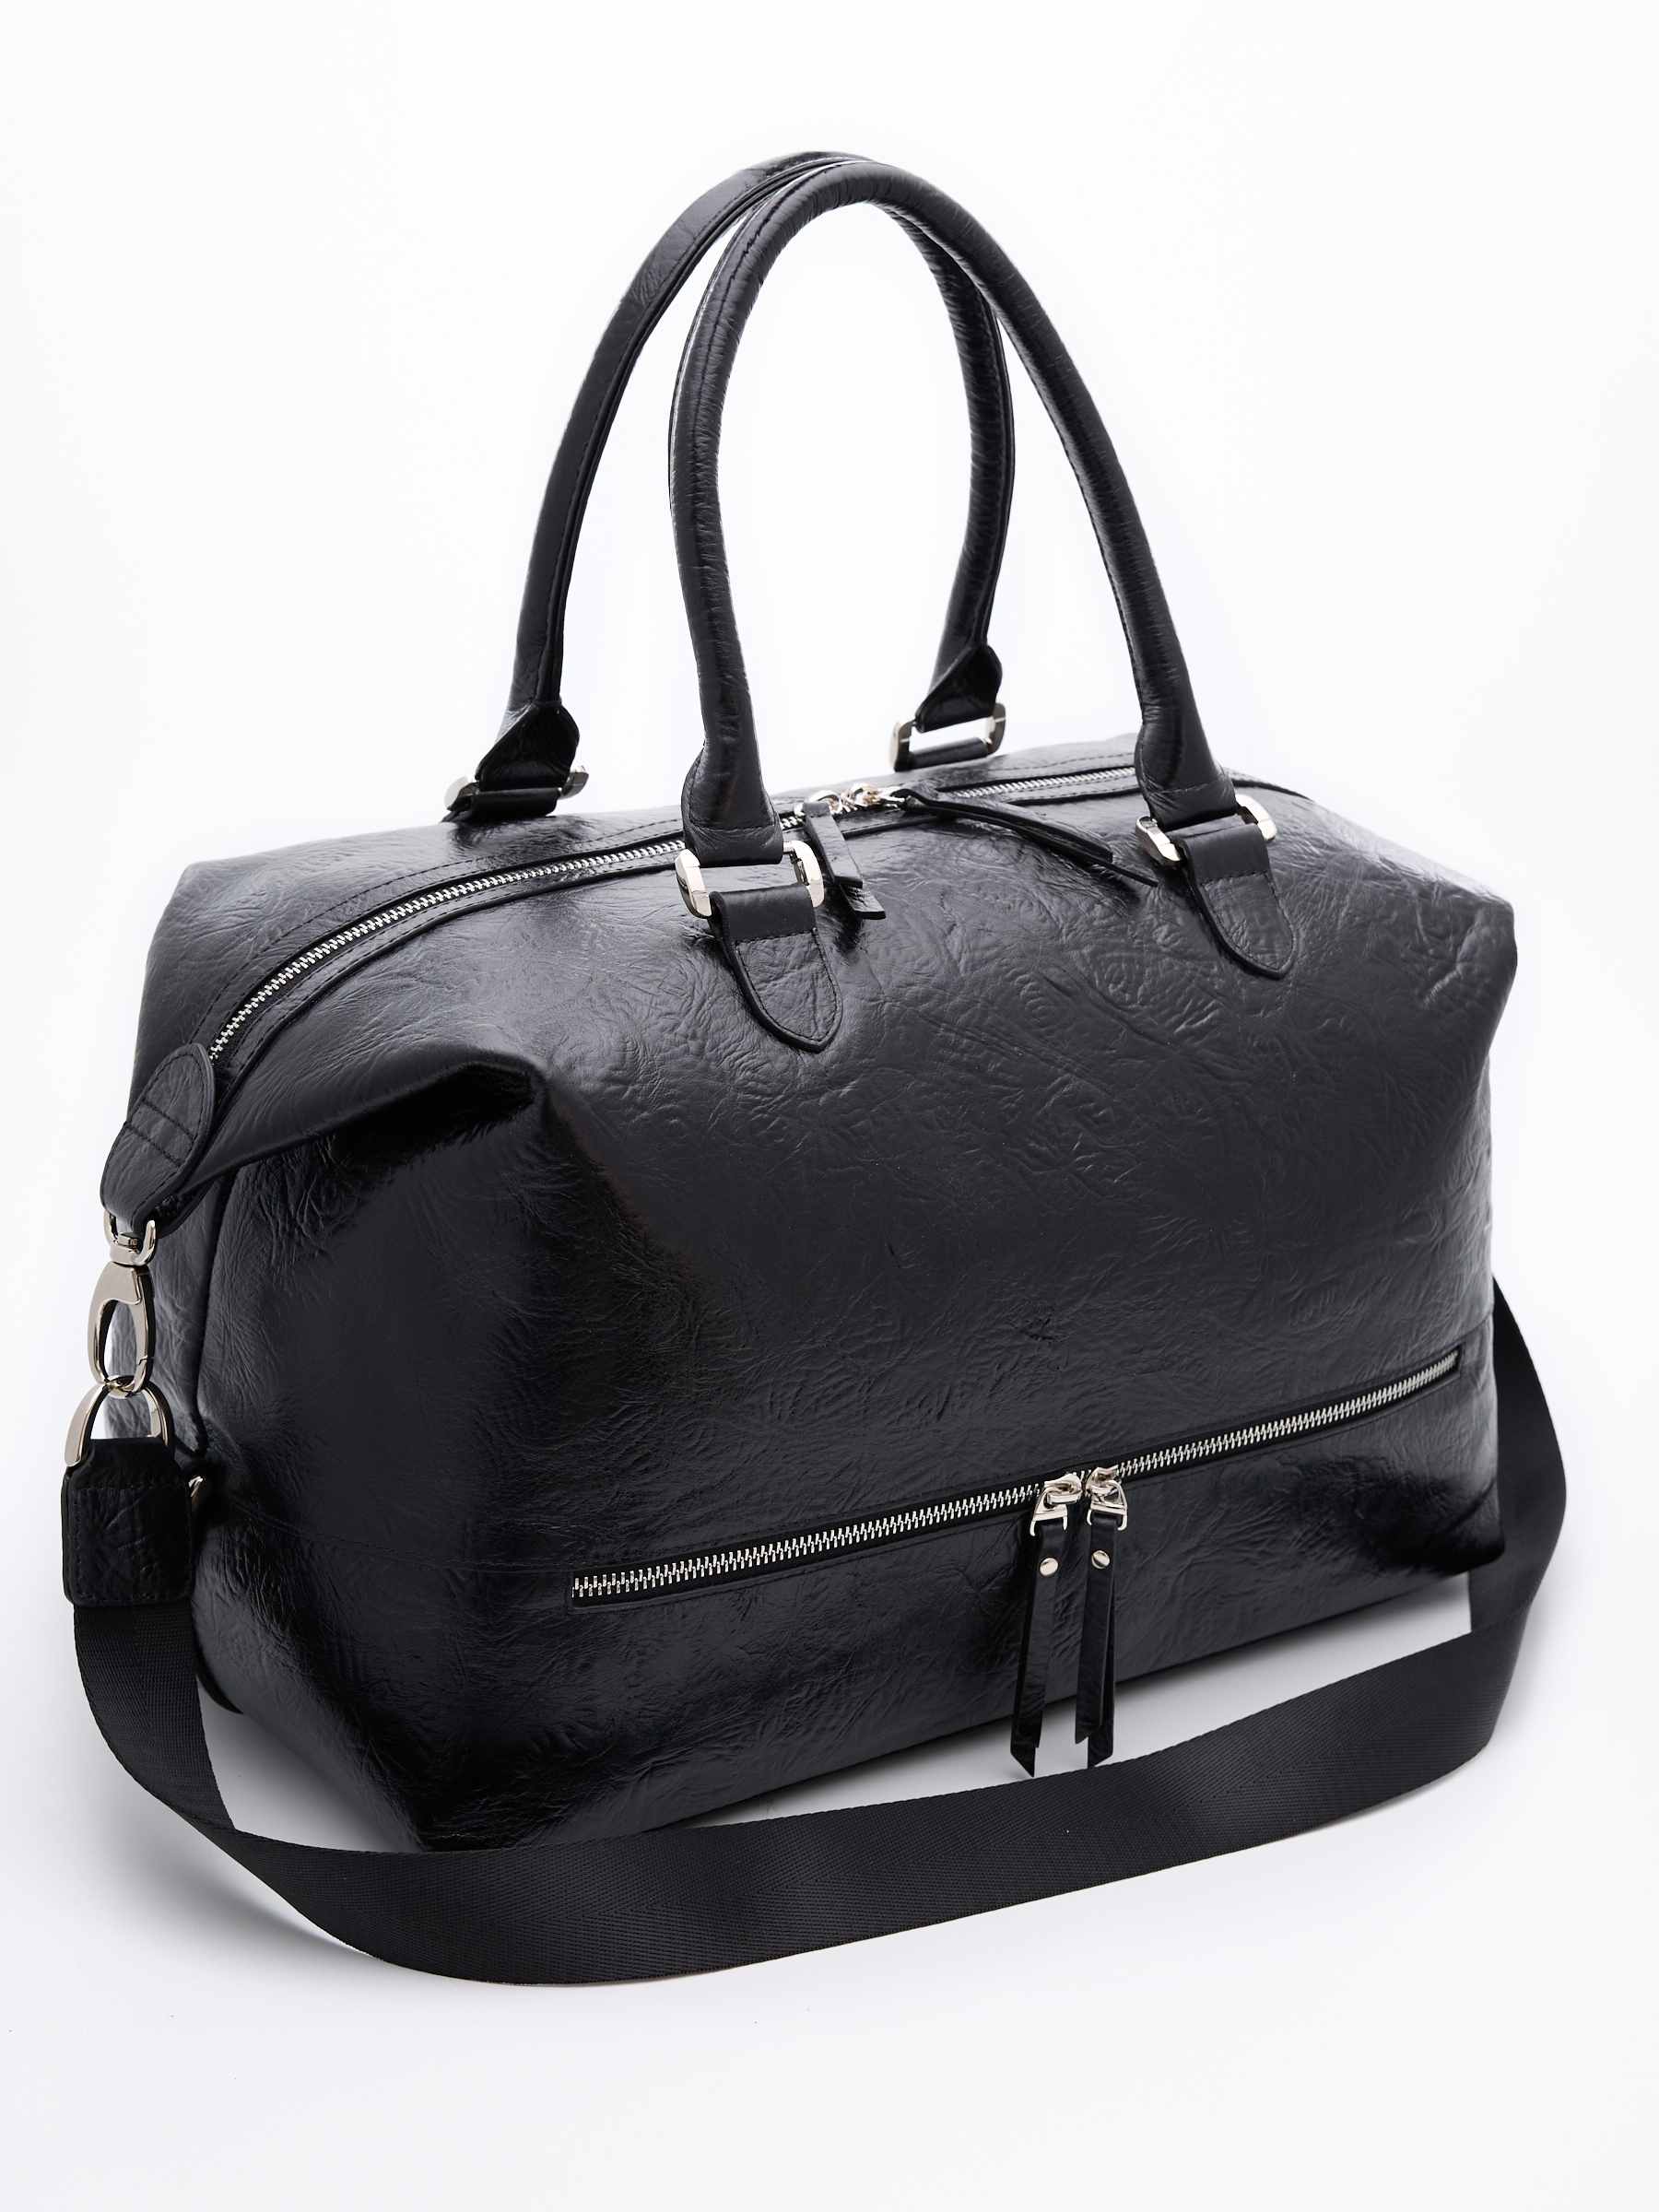 Дорожная сумка унисекс Franchesco Mariscotti 6-432 черная кордоба, 42x28x24 см